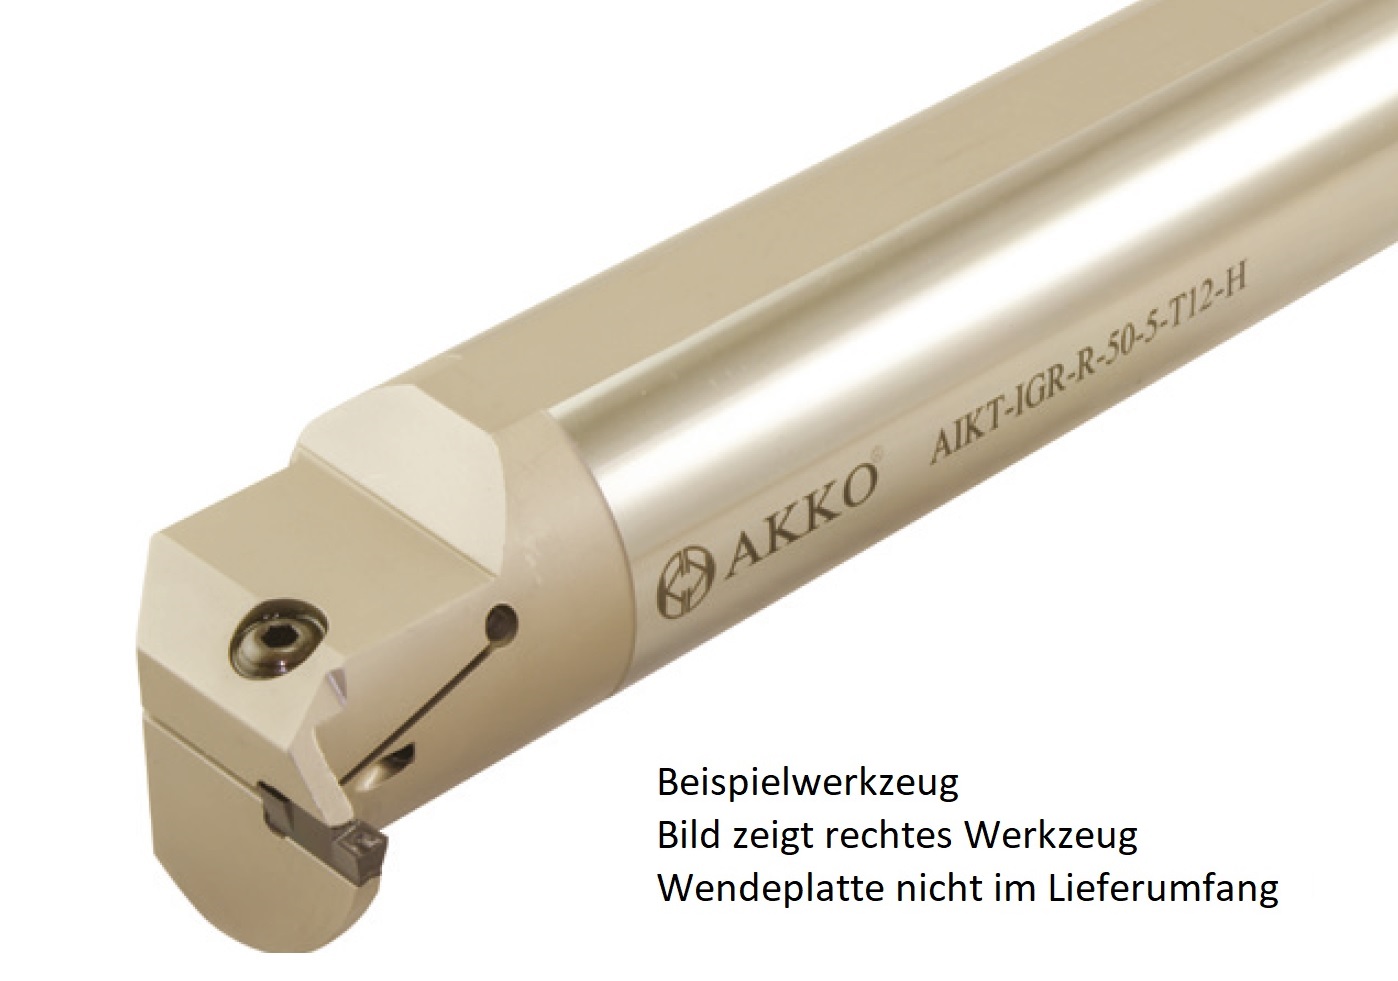 AKKO-Innen-Stechhalter, kompatibel mit Iscar-Stechplatte DGN / GRP-4
Schaft-ø 32, mit Innenkühlung, links